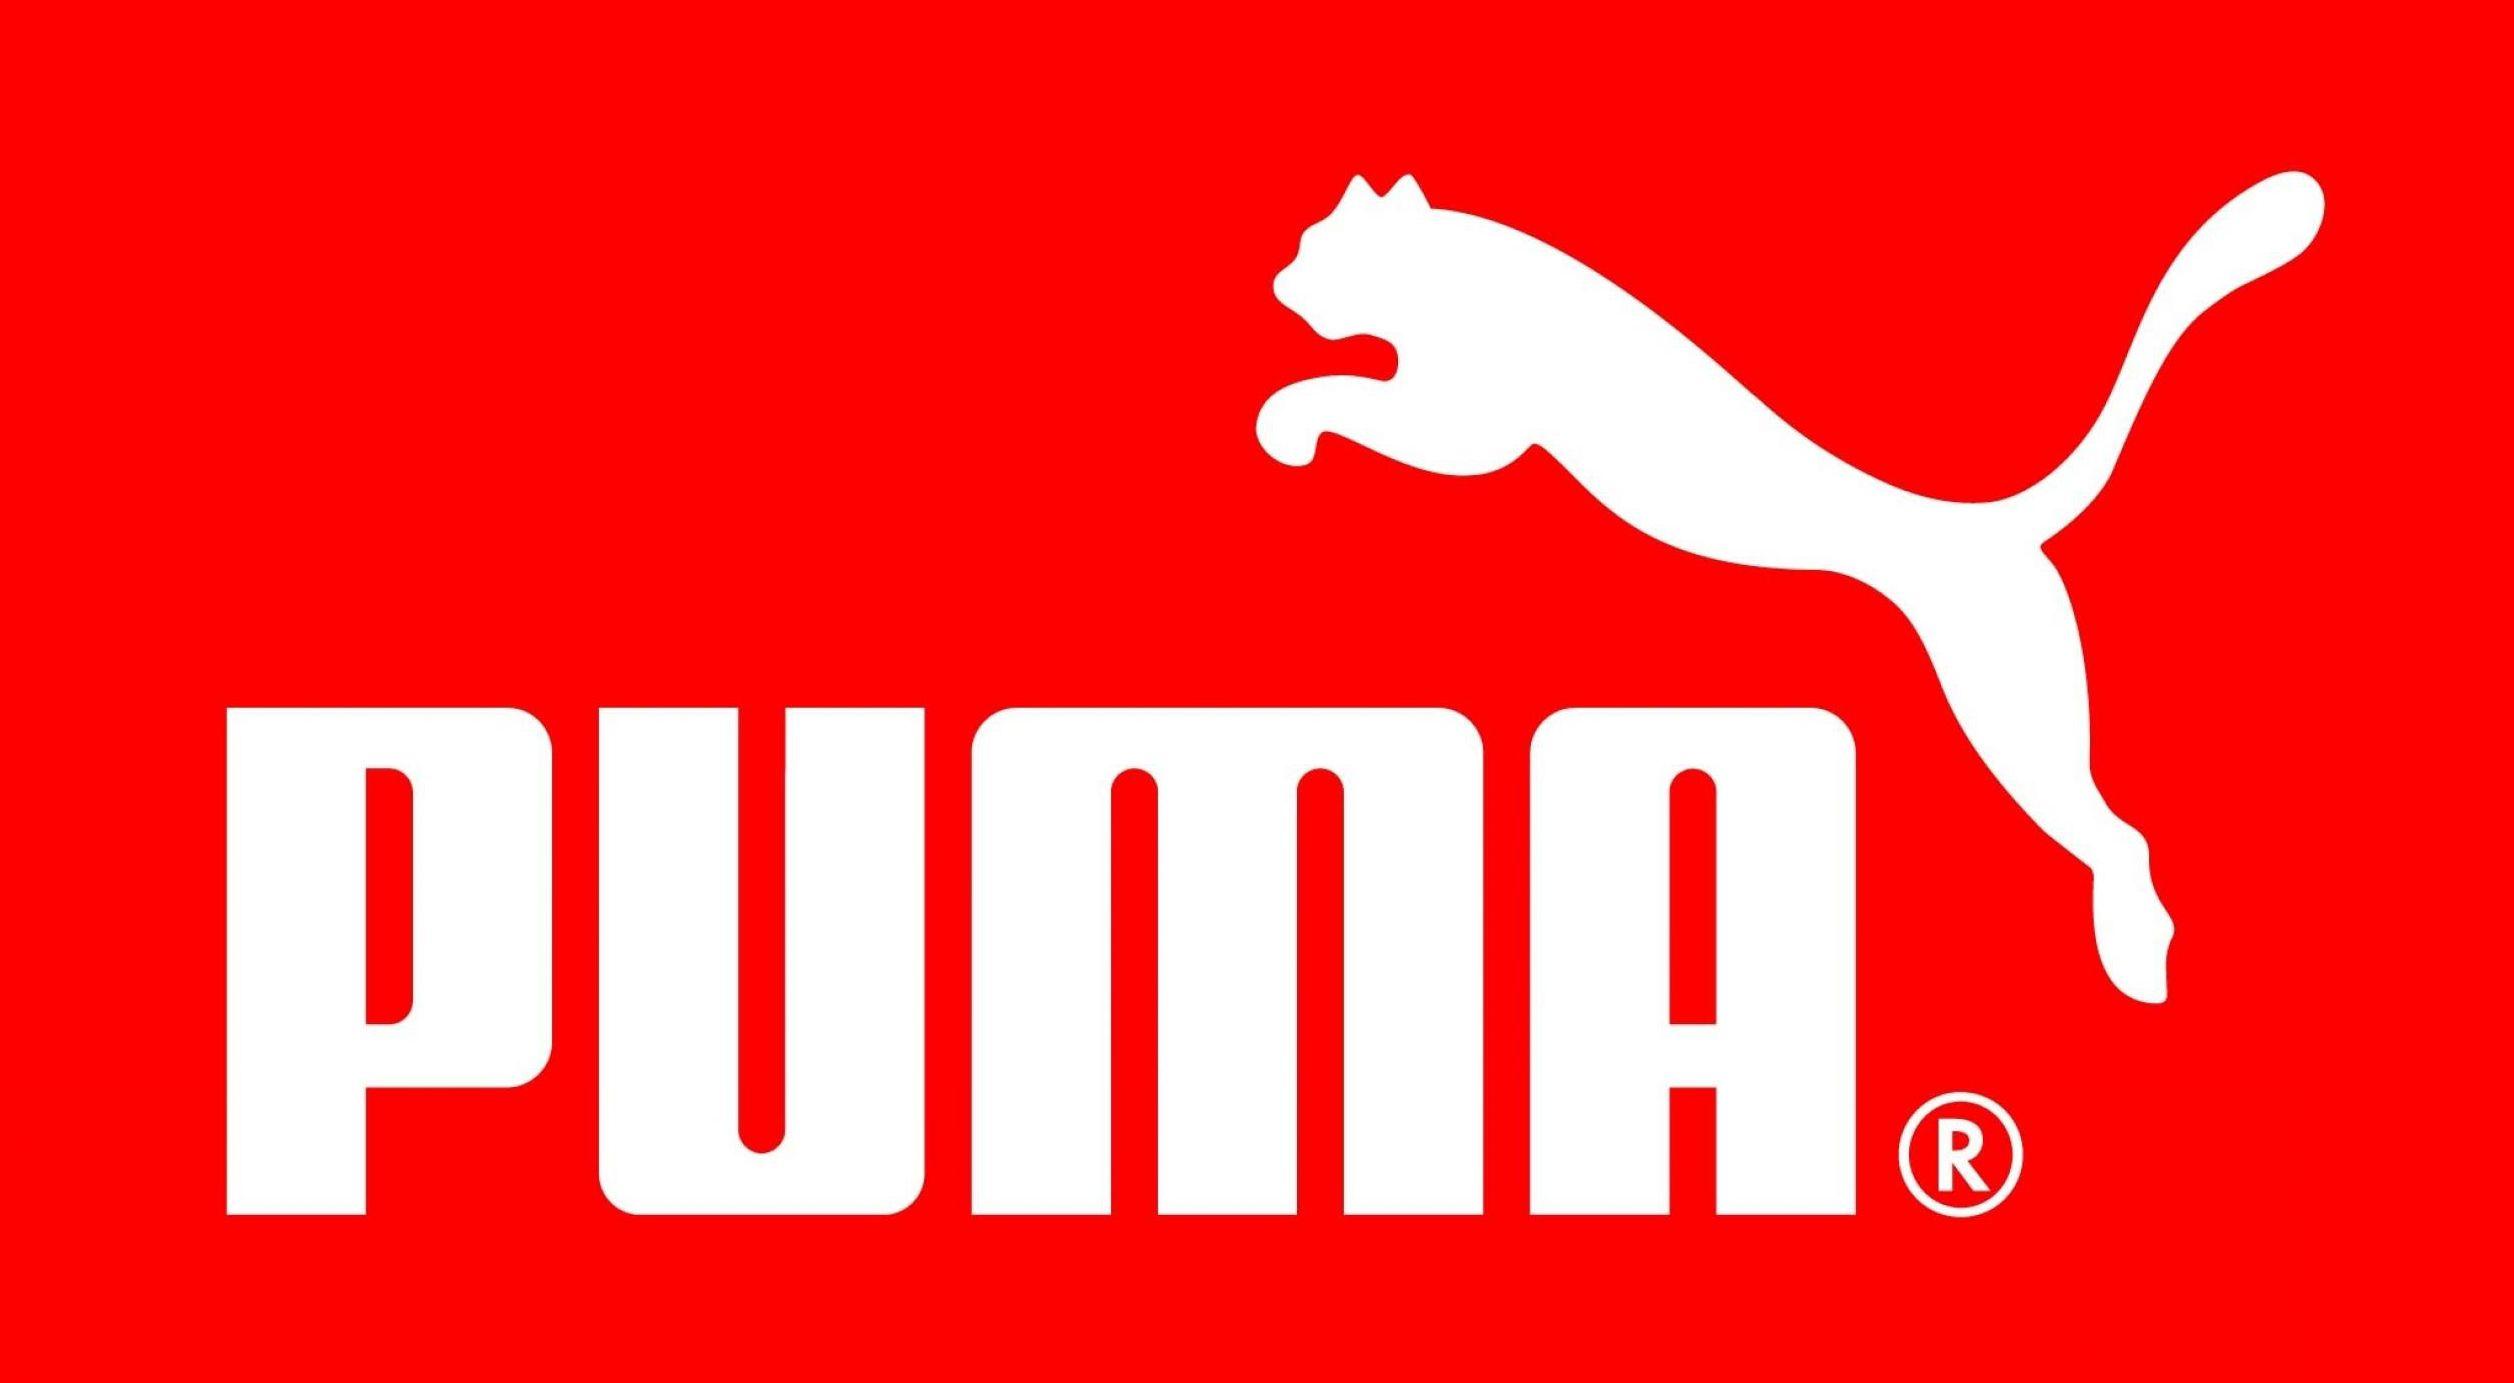 Puma Black and White Logo - PUMA Logo, PUMA Symbol, Meaning, History and Evolution